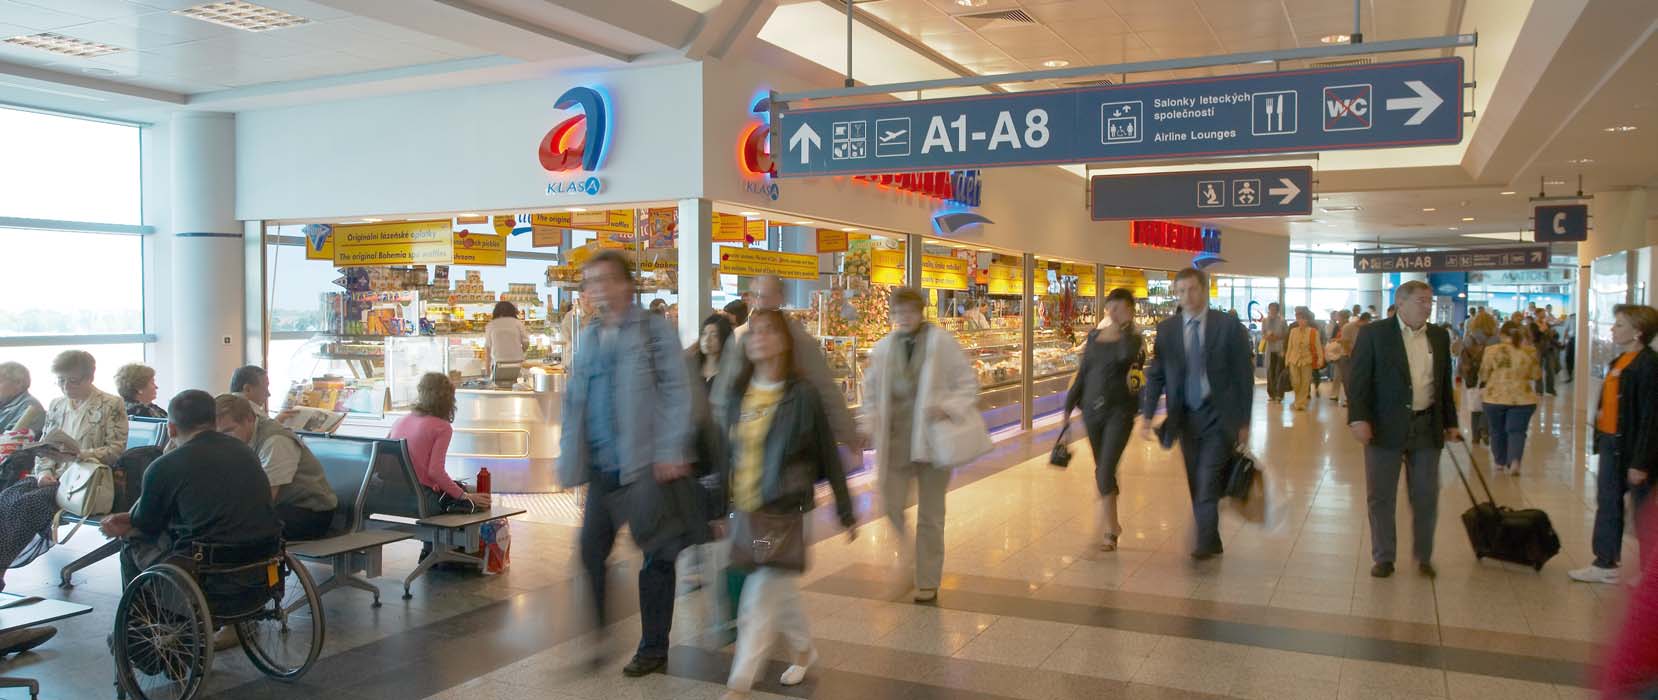 Komerční aktivity Commercial Activities Komerční aktivity jsou pro letiště druhým největším zdrojem příjmů a představují 32 % z dosažených výnosů Letiště Praha, s.p. V roce 2005 dosáhly výnosy z komerčních aktivit hodnoty 1,42 mld.